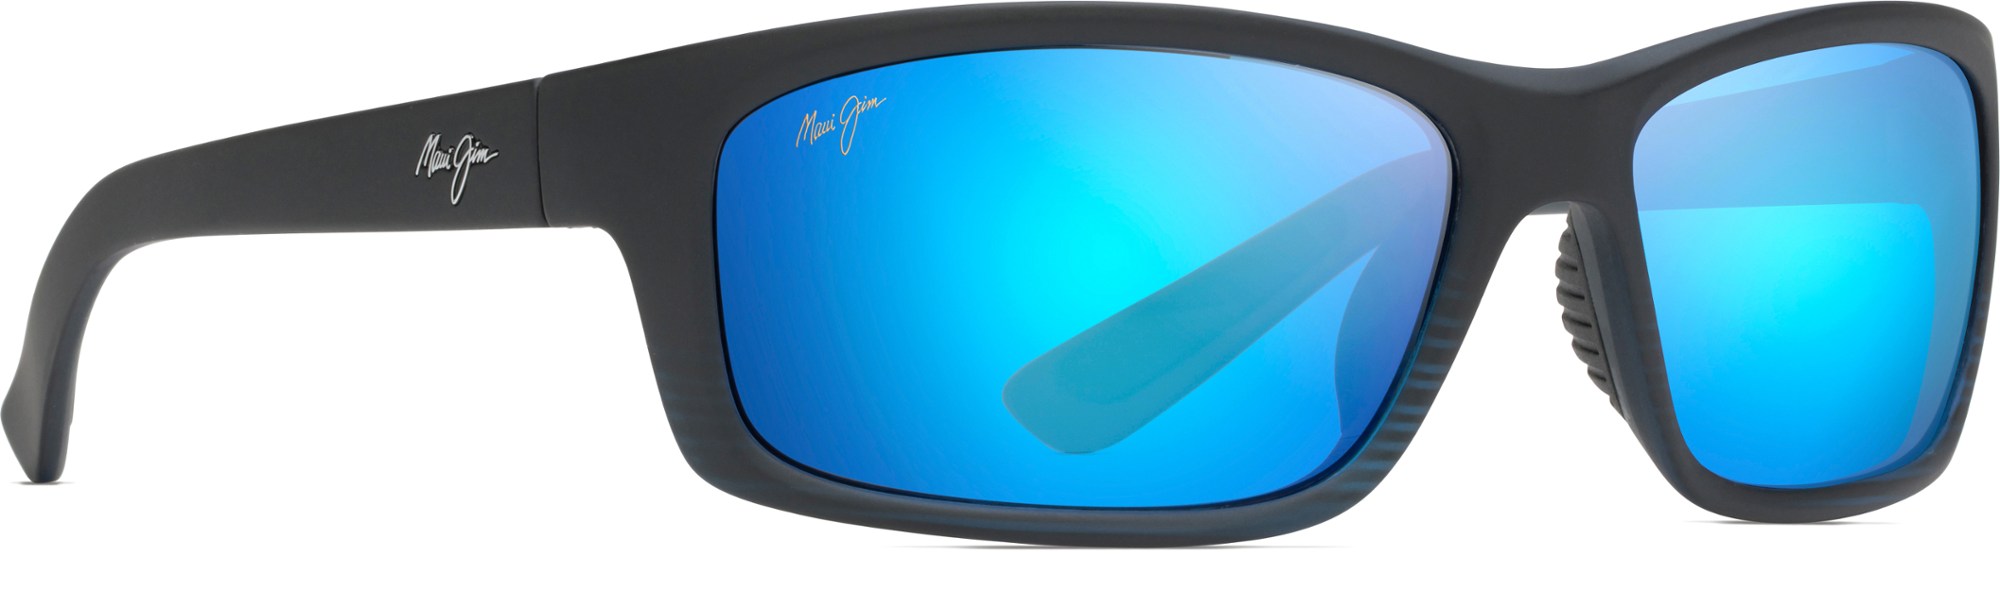 Поляризованные солнцезащитные очки Kanaio Coast Maui Jim, синий солнцезащитные очки kanaio coast maui jim цвет matte soft black white blue